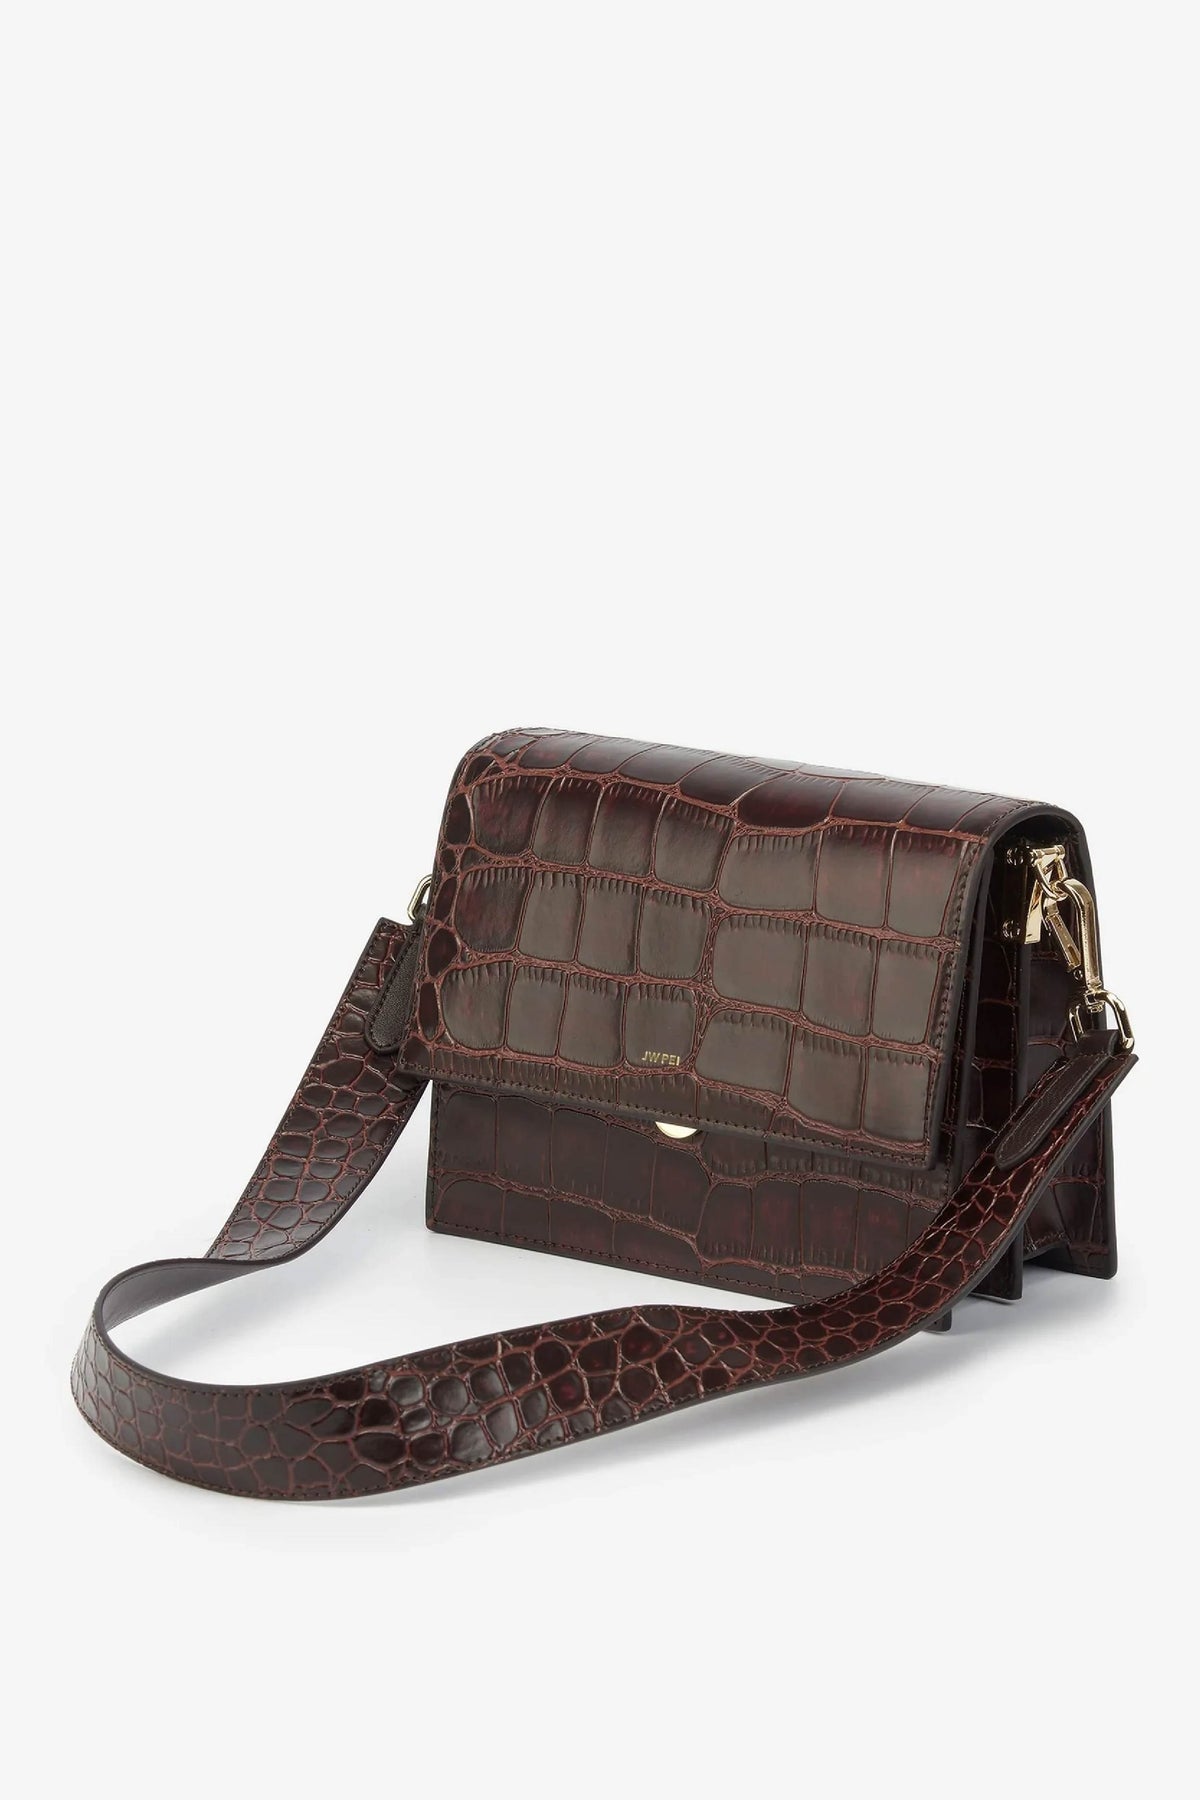 JW PEI Mini Flap Bag Brown Croc